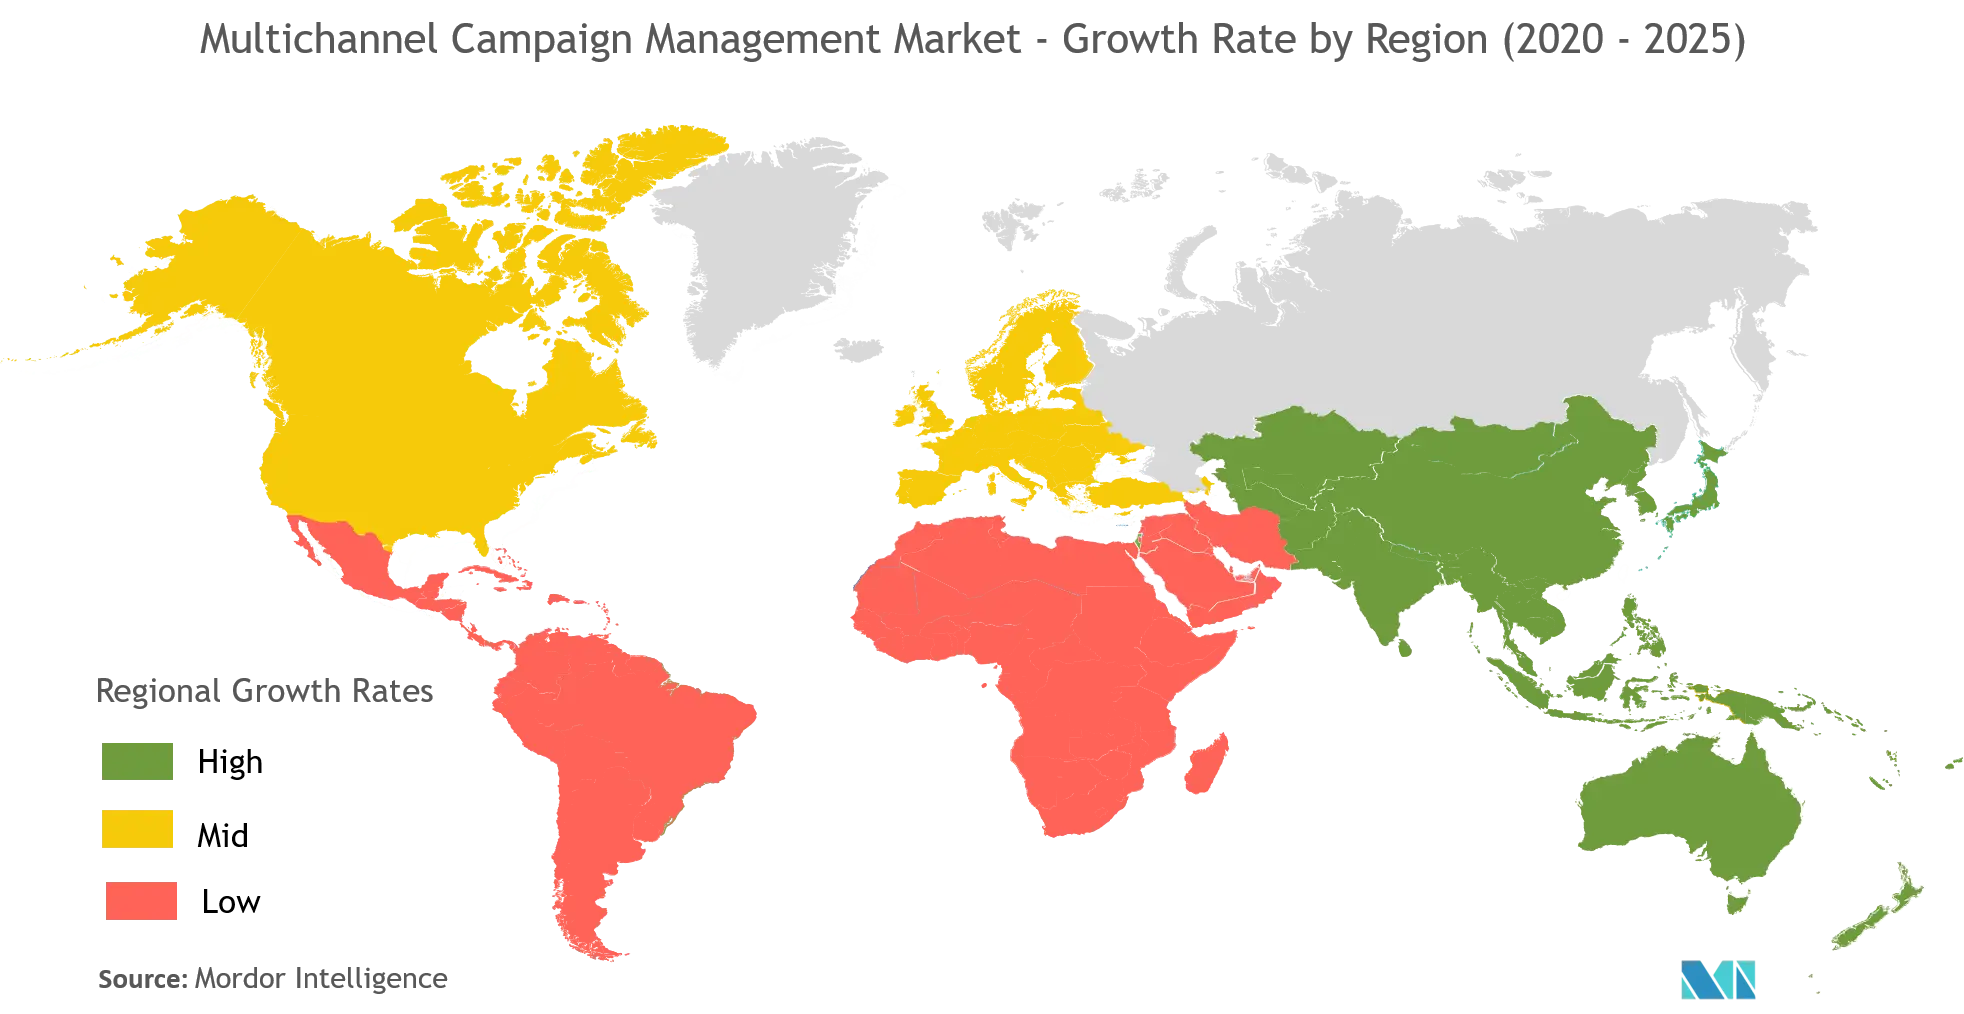 Multichannel Campaign Management Market Trends